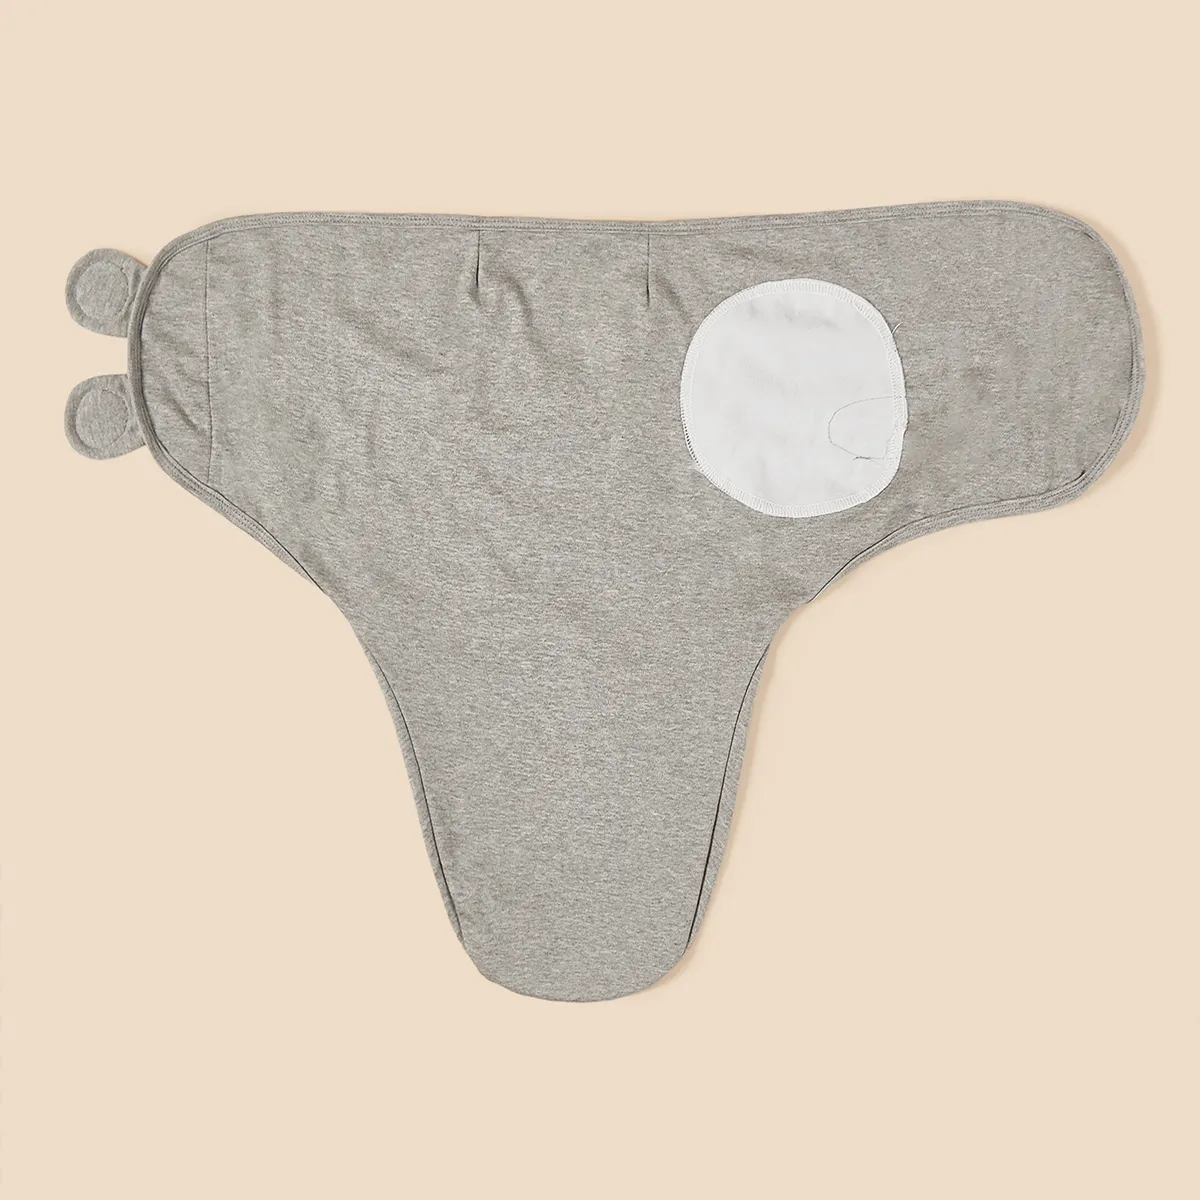 100% algodón unisex bebé primavera-verano sacos de dormir ultra suaves Gris claro big image 1